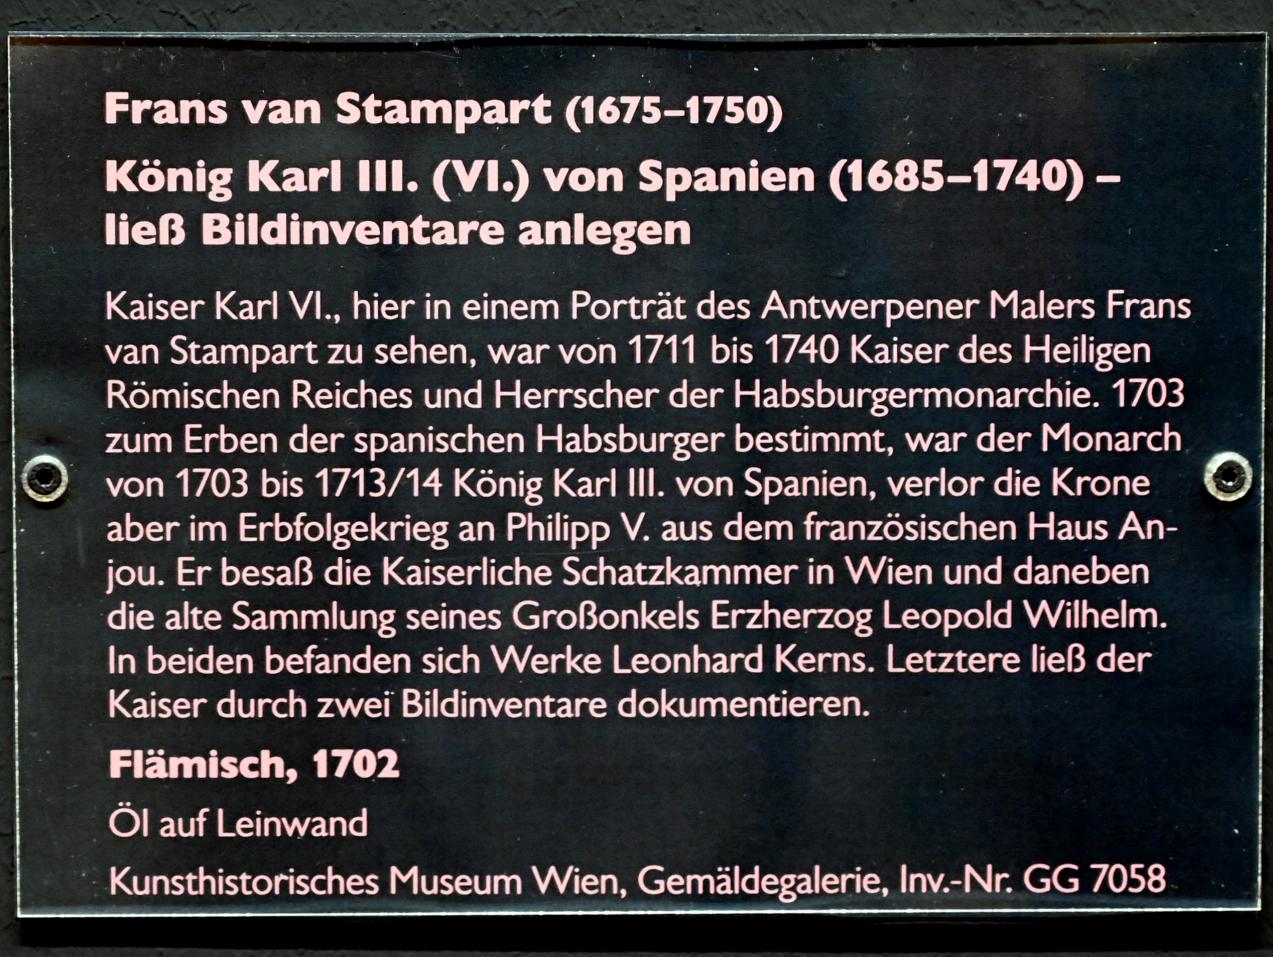 Frans van Stampart (1702–1735), König Karl III. (VI.) von Spanien (1685-1740) - ließ Bildinventare anlegen, Schwäbisch Hall, Kunsthalle Würth, Ausstellung "Leonhard Kern und Europa" vom 29.03. - 03.10.2021, Saal 4, 1702, Bild 3/3